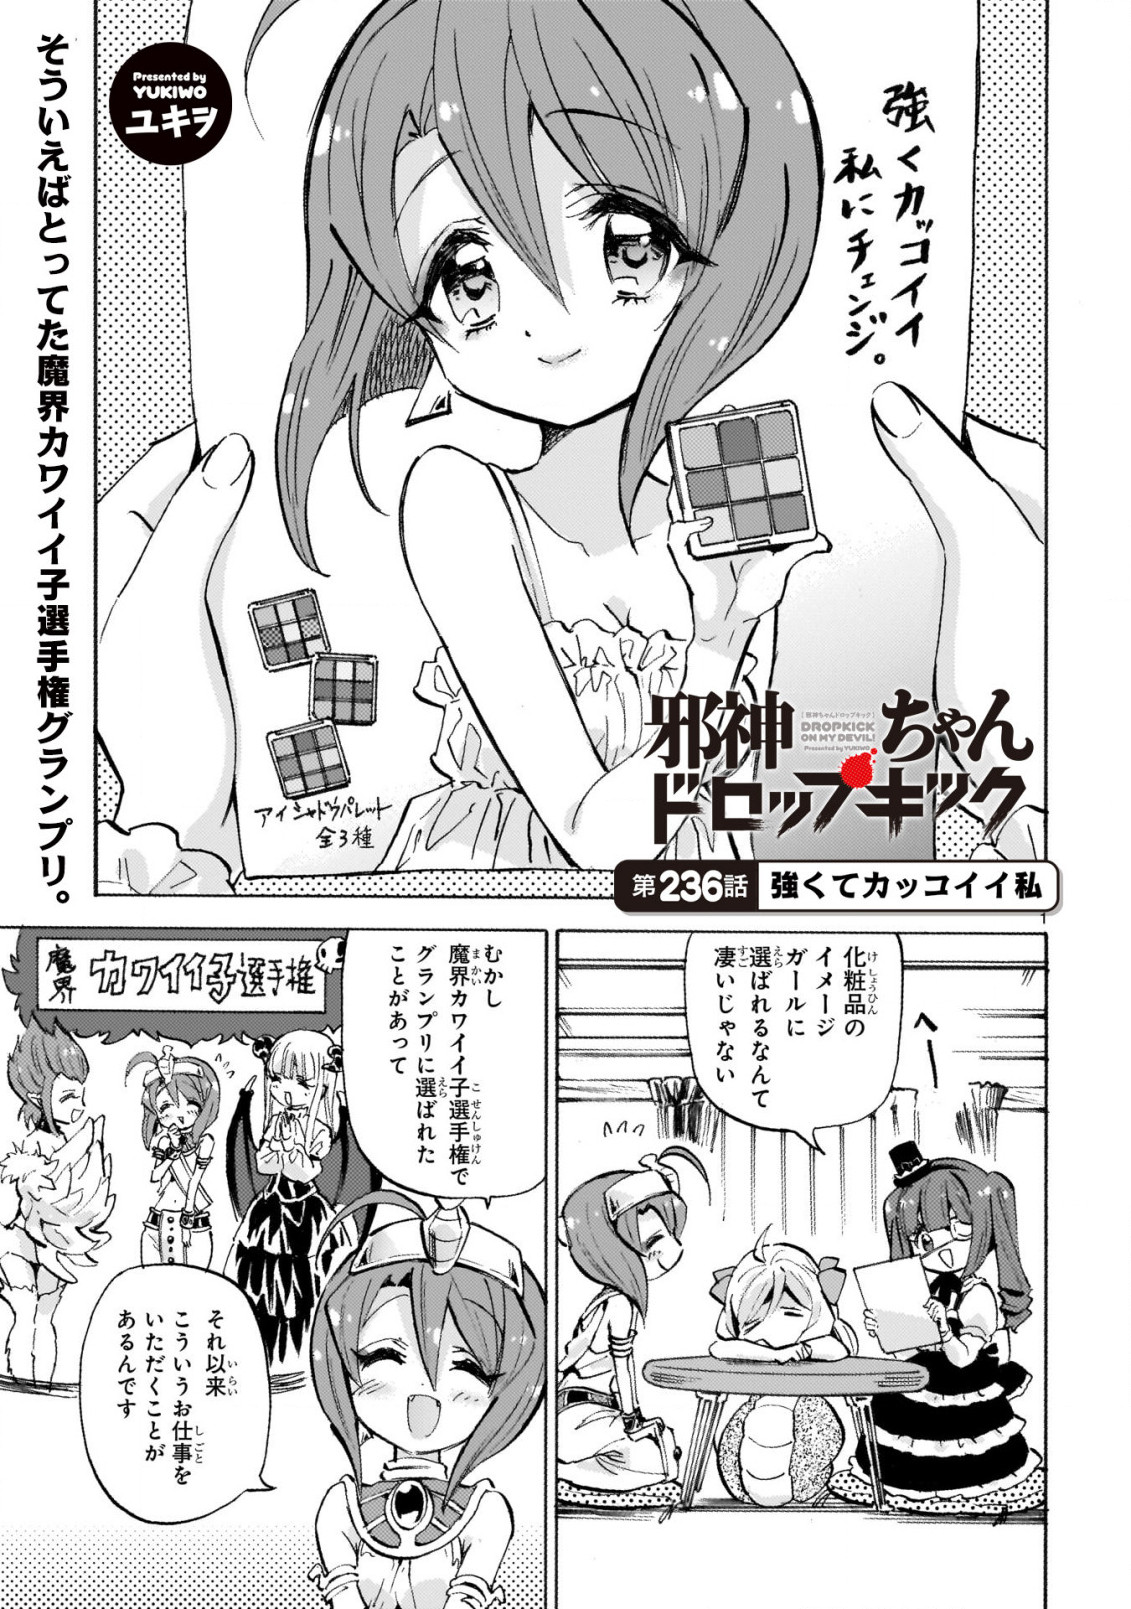 Jashin-chan Dropkick - Chapter 236 - Page 1